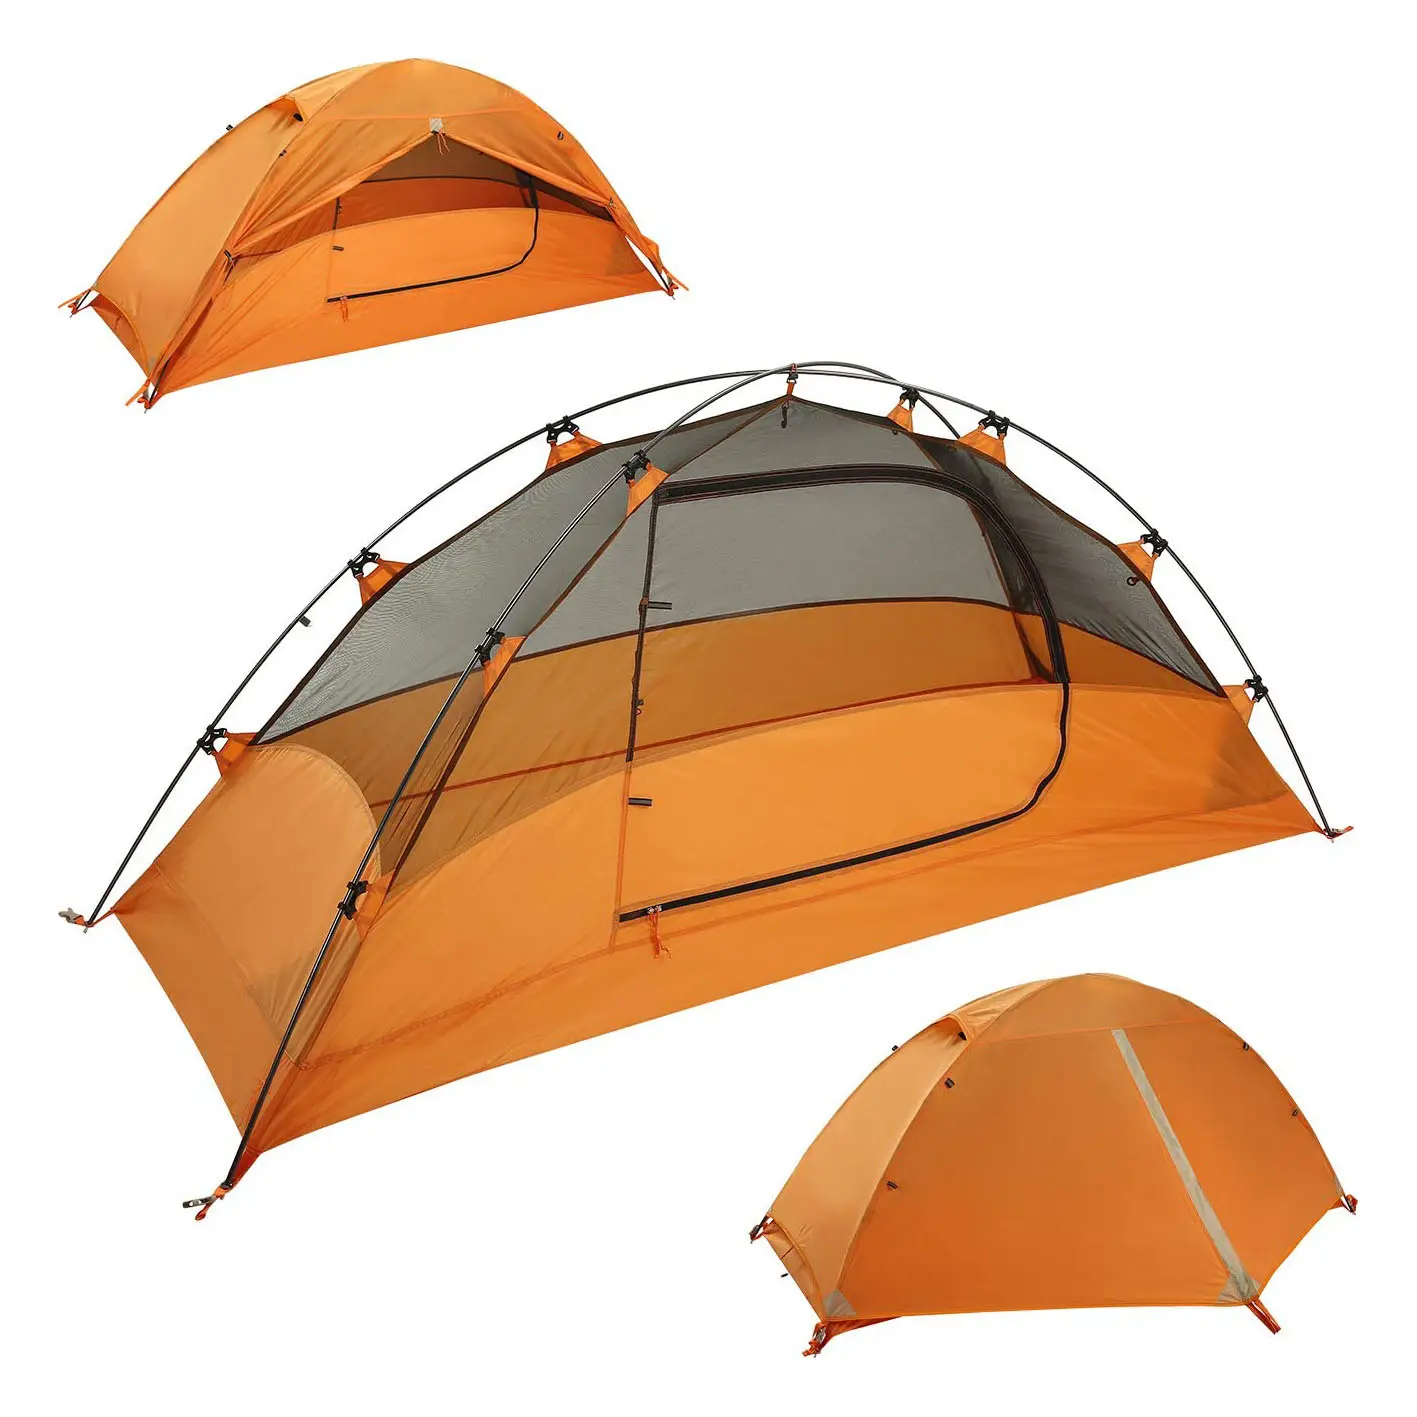 1 Pessoa Ultraleve Tenda Mochila, Rainfly & Floor impermeável com 2 Portas para 4 Temporada Outdoor Camping & Caminhadas Barracas Cúpula